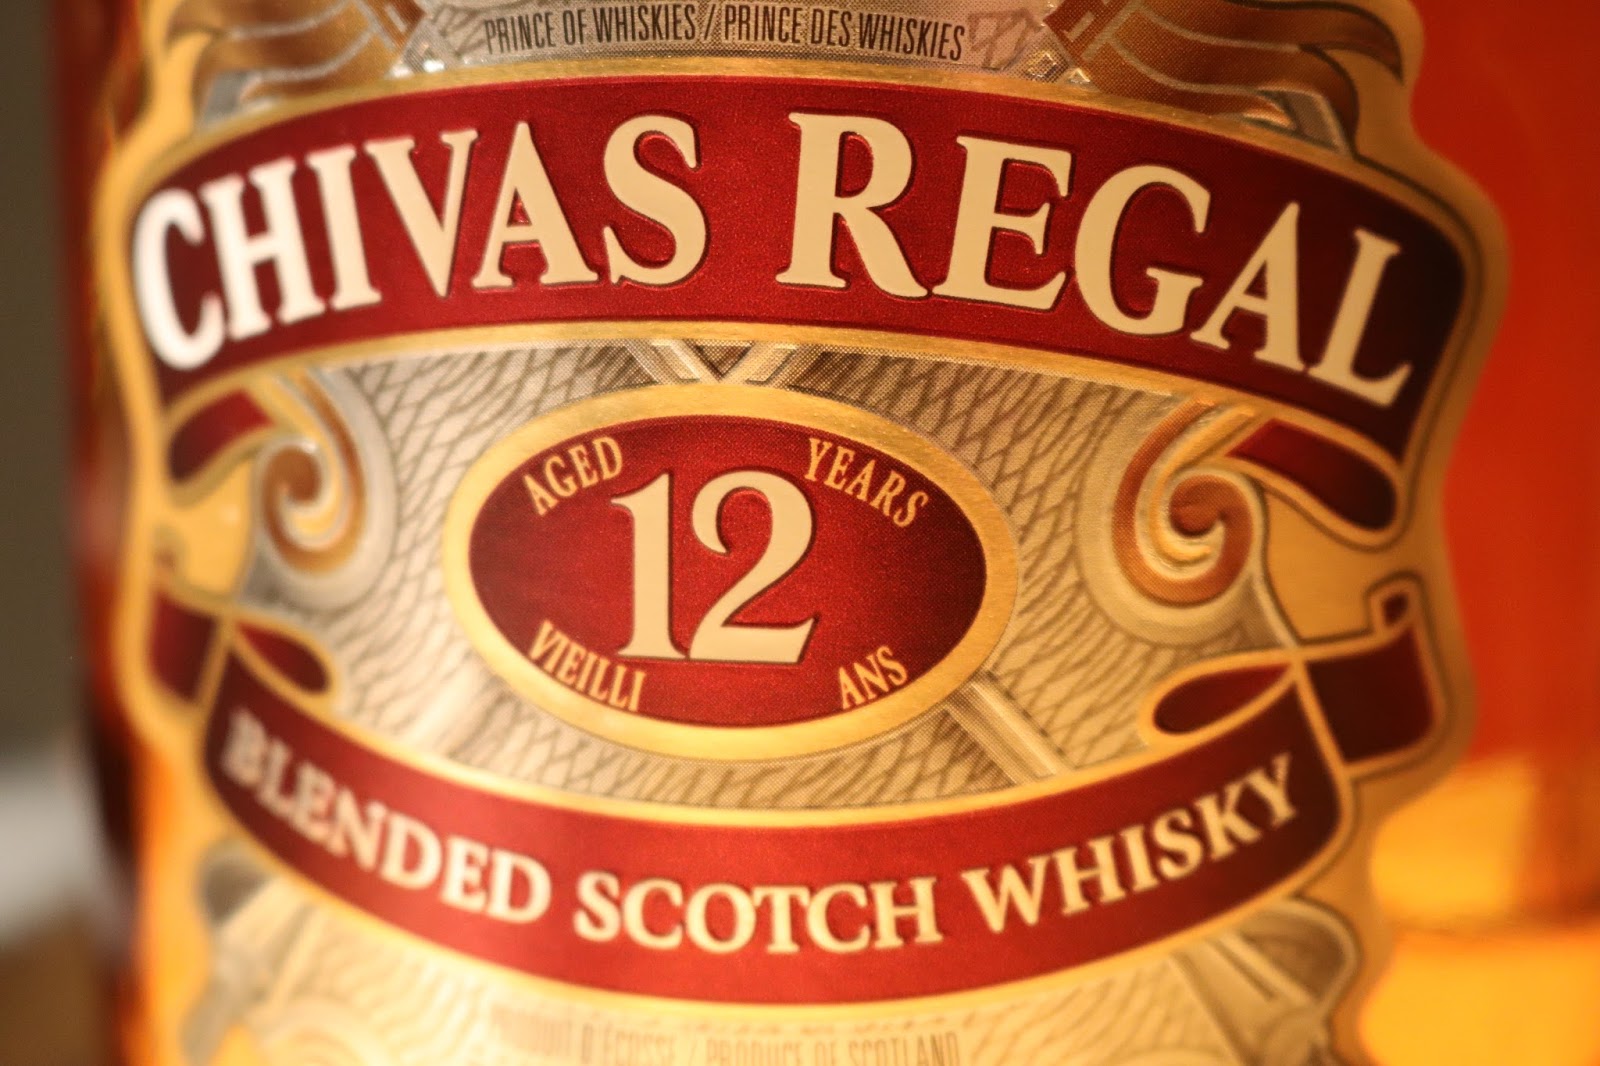 Blended Scotch Whisky Chivas Regal 18 ans d'âge — Chivas Regal CI